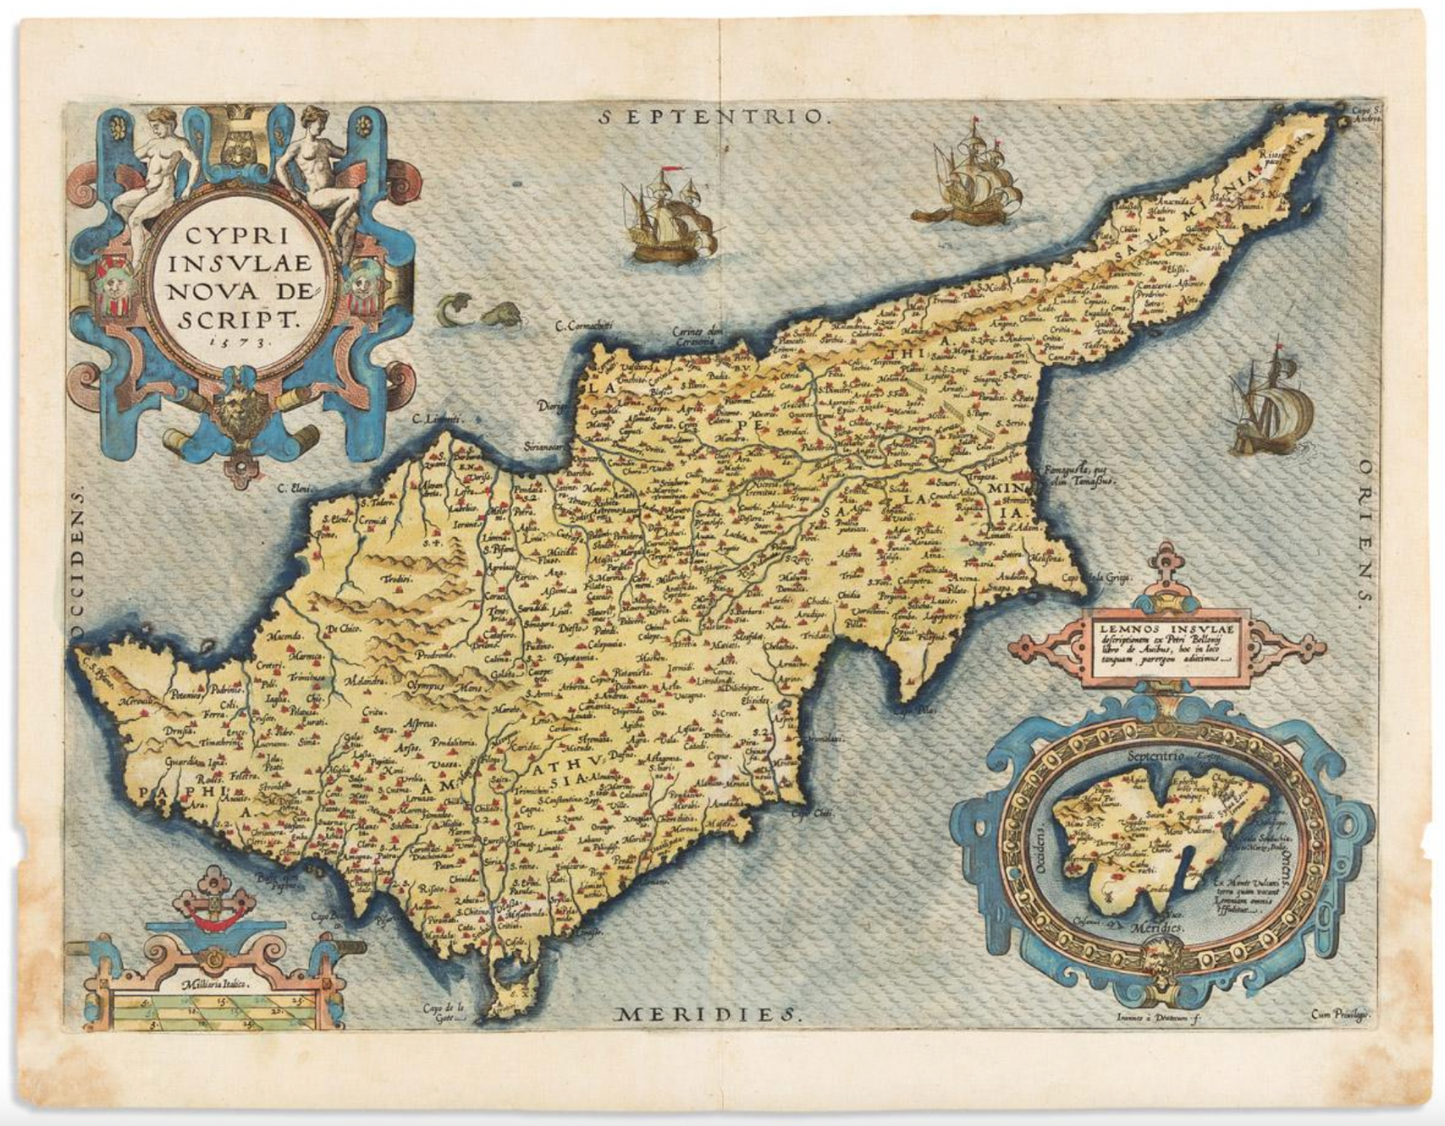 CYPRUS - "Cypri Imsulae" 1579 - Abraham Ortelius- Original Antique Map